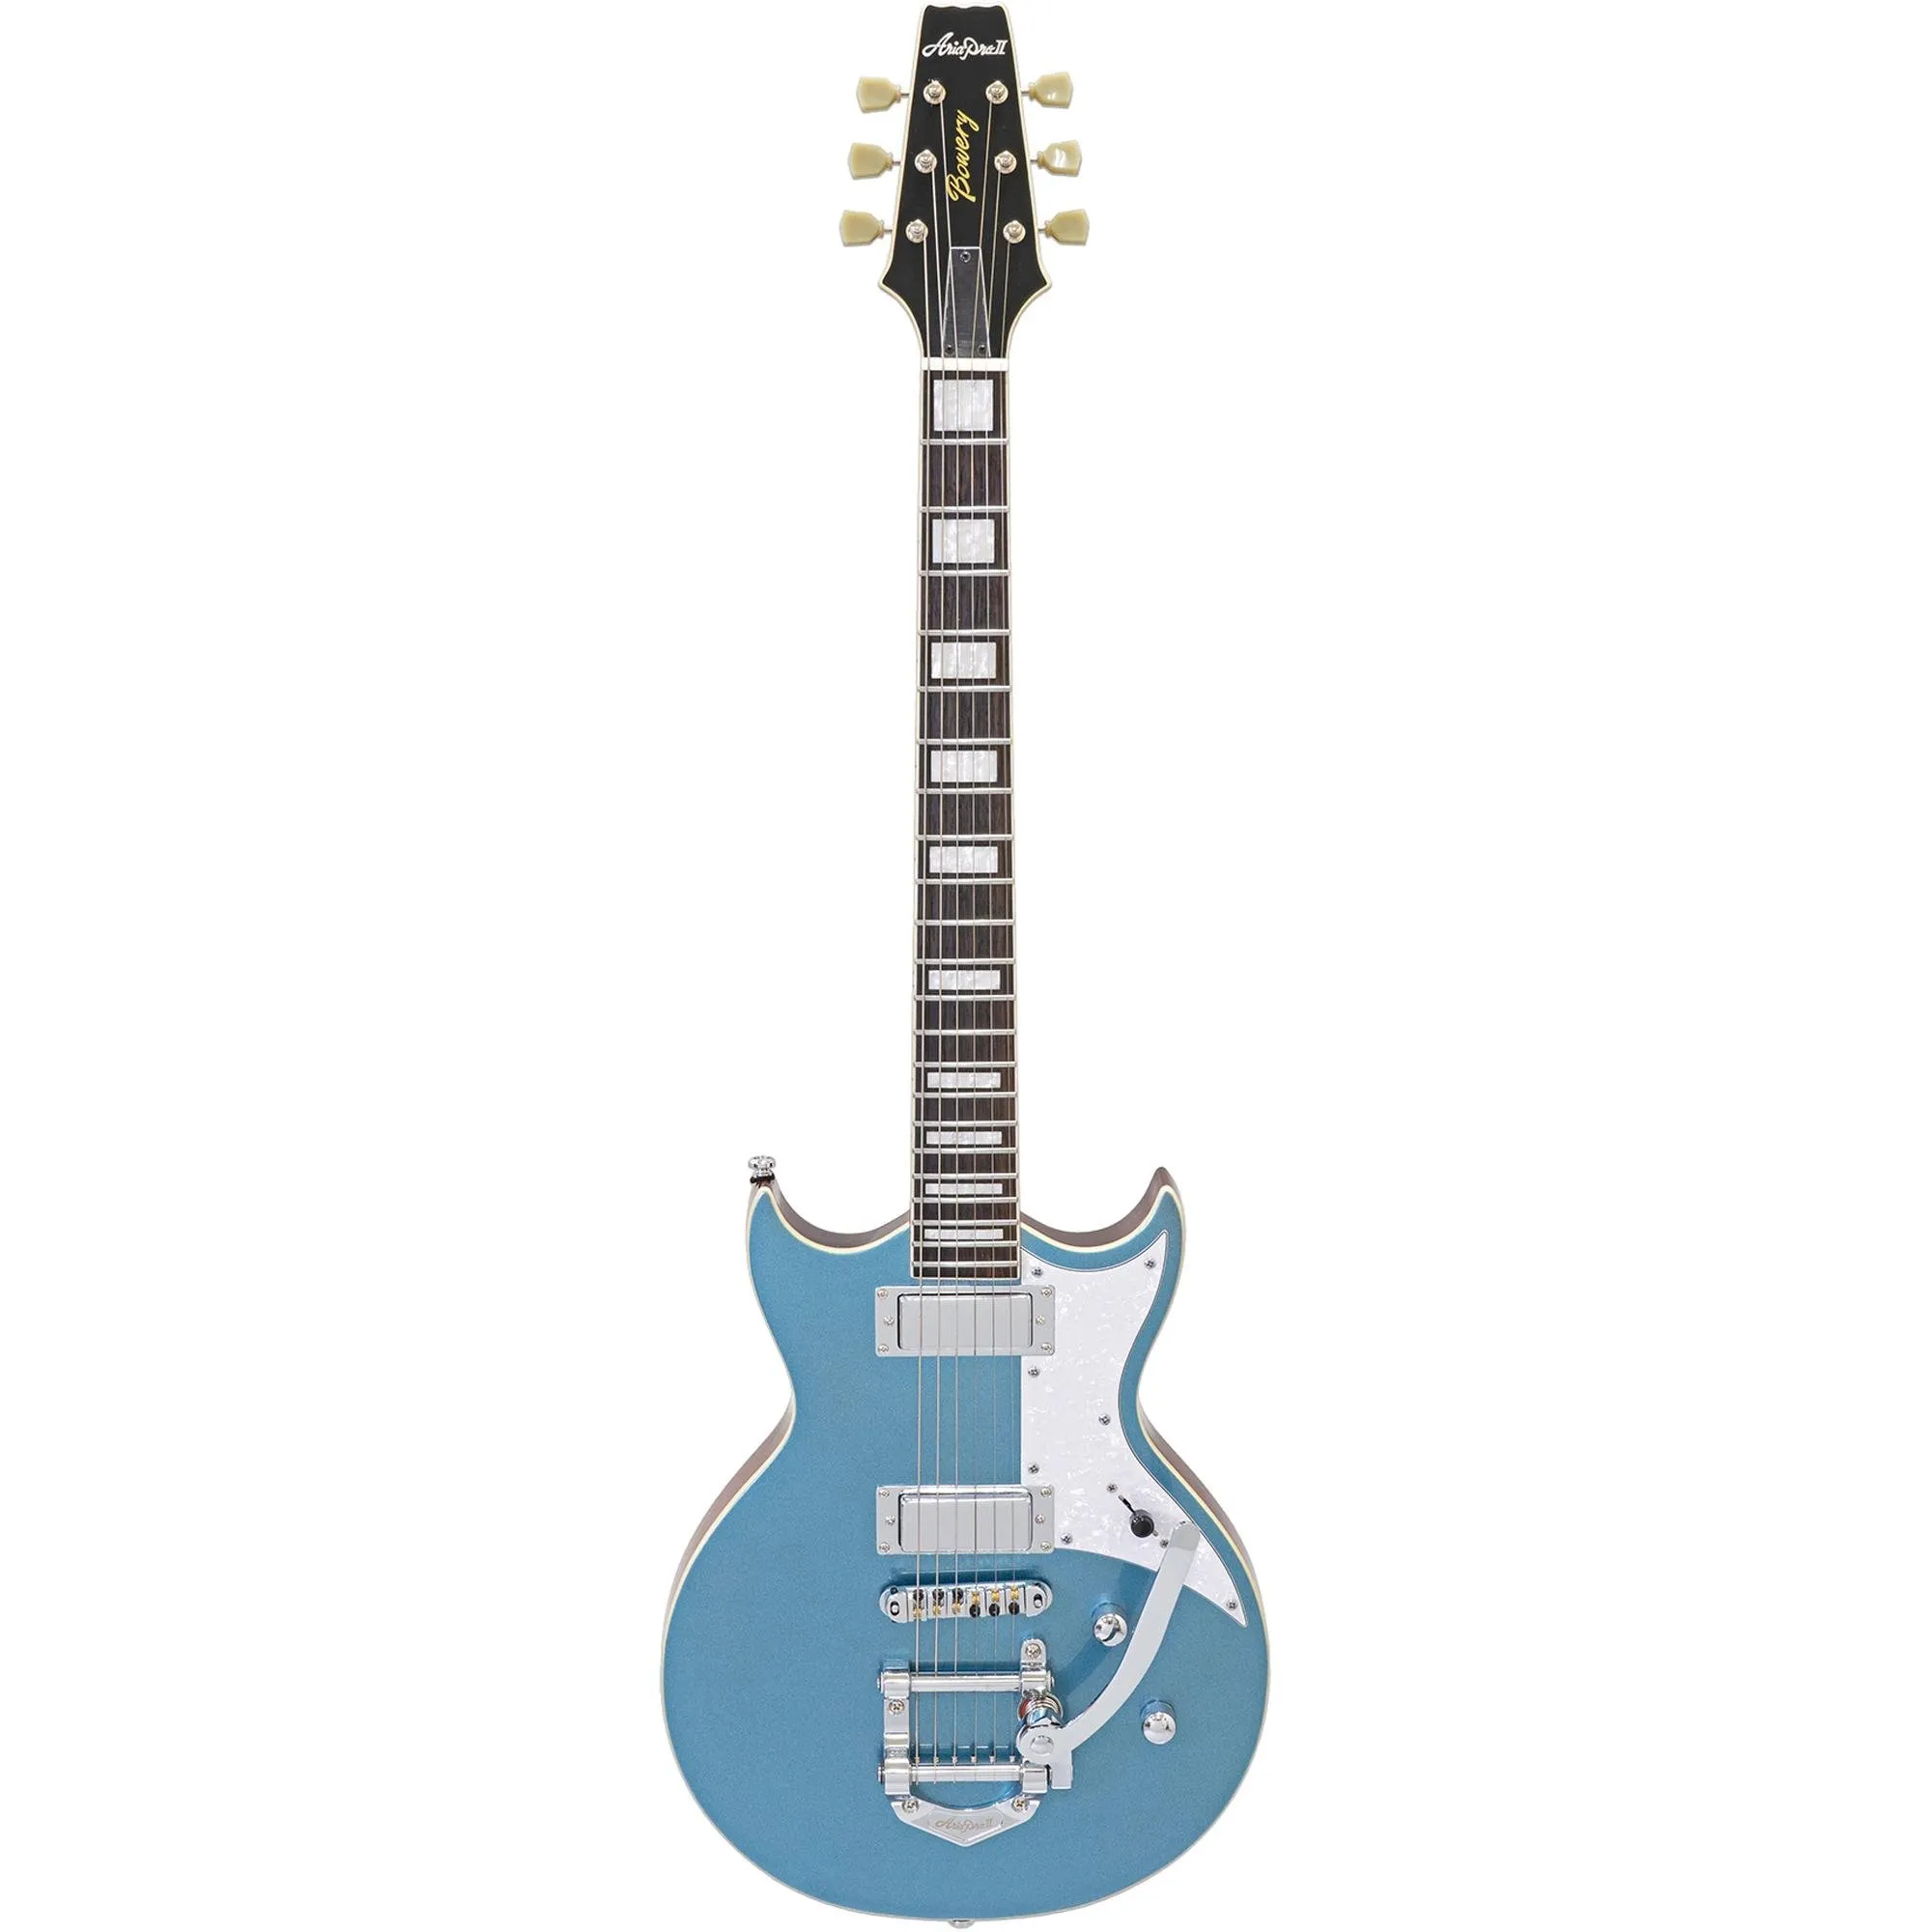 Guitarra Aria Pro II 212-MK2 Bowery Phantom Blue por 5.053,66 à vista no boleto/pix ou parcele em até 12x sem juros. Compre na loja Aria!